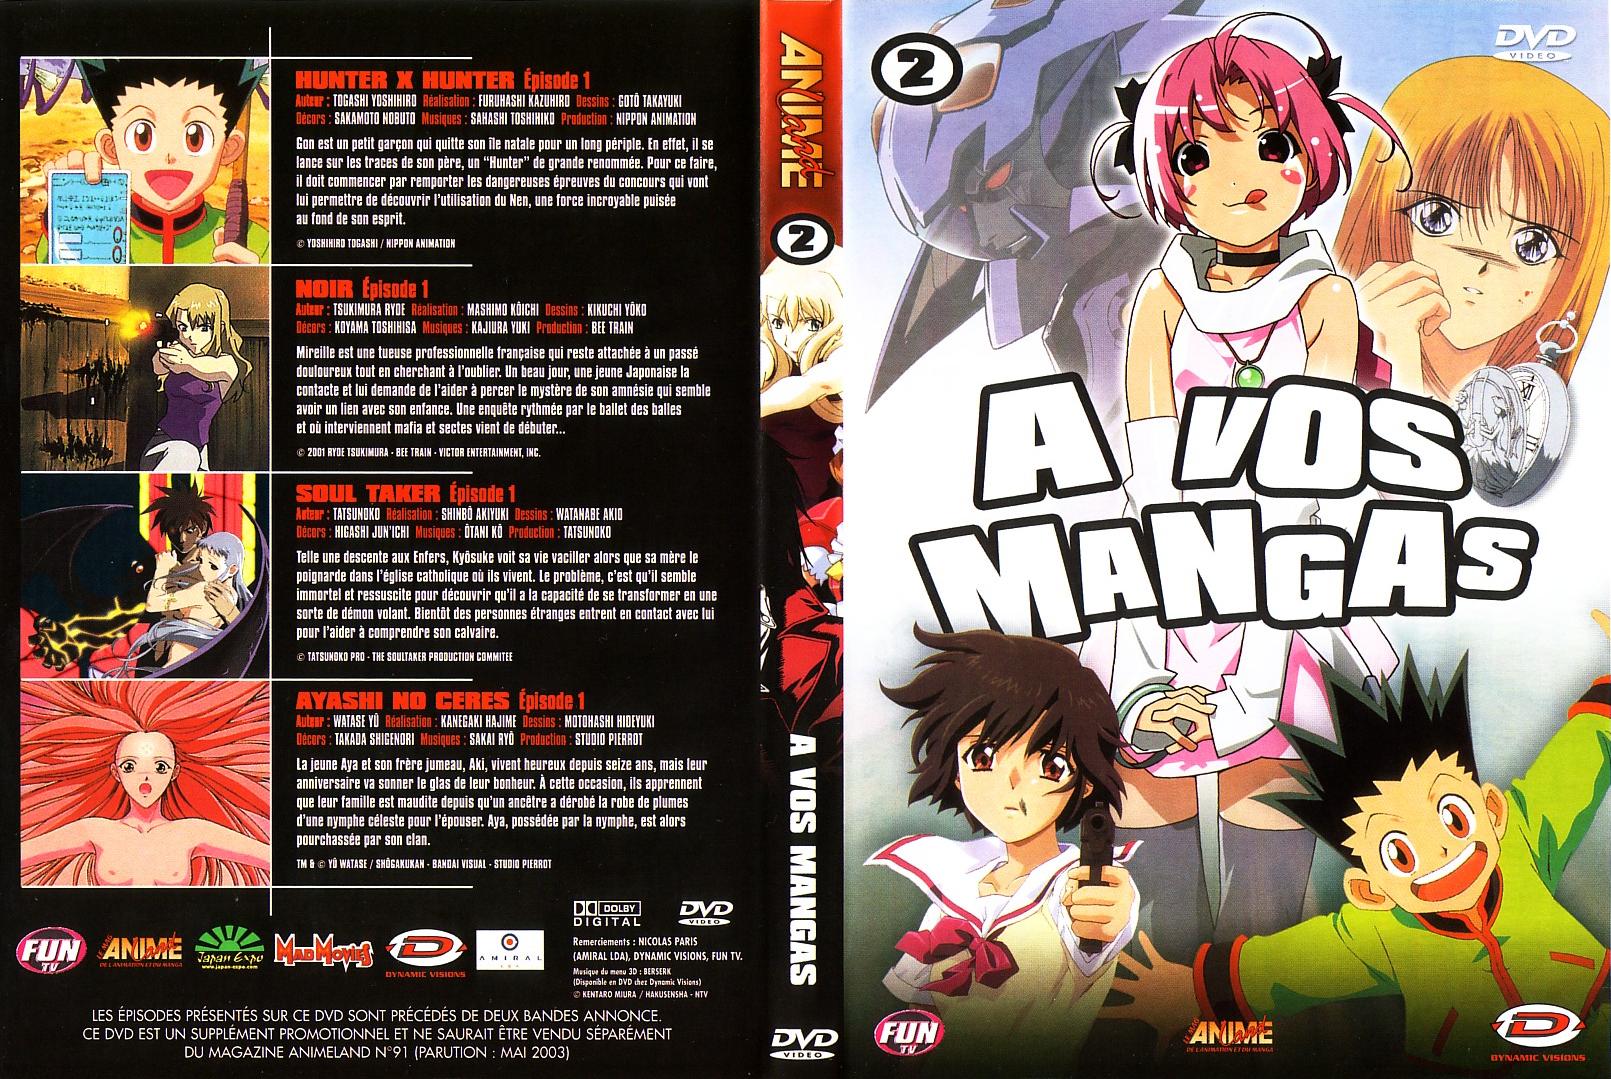 Jaquette DVD A vos mangas vol 02